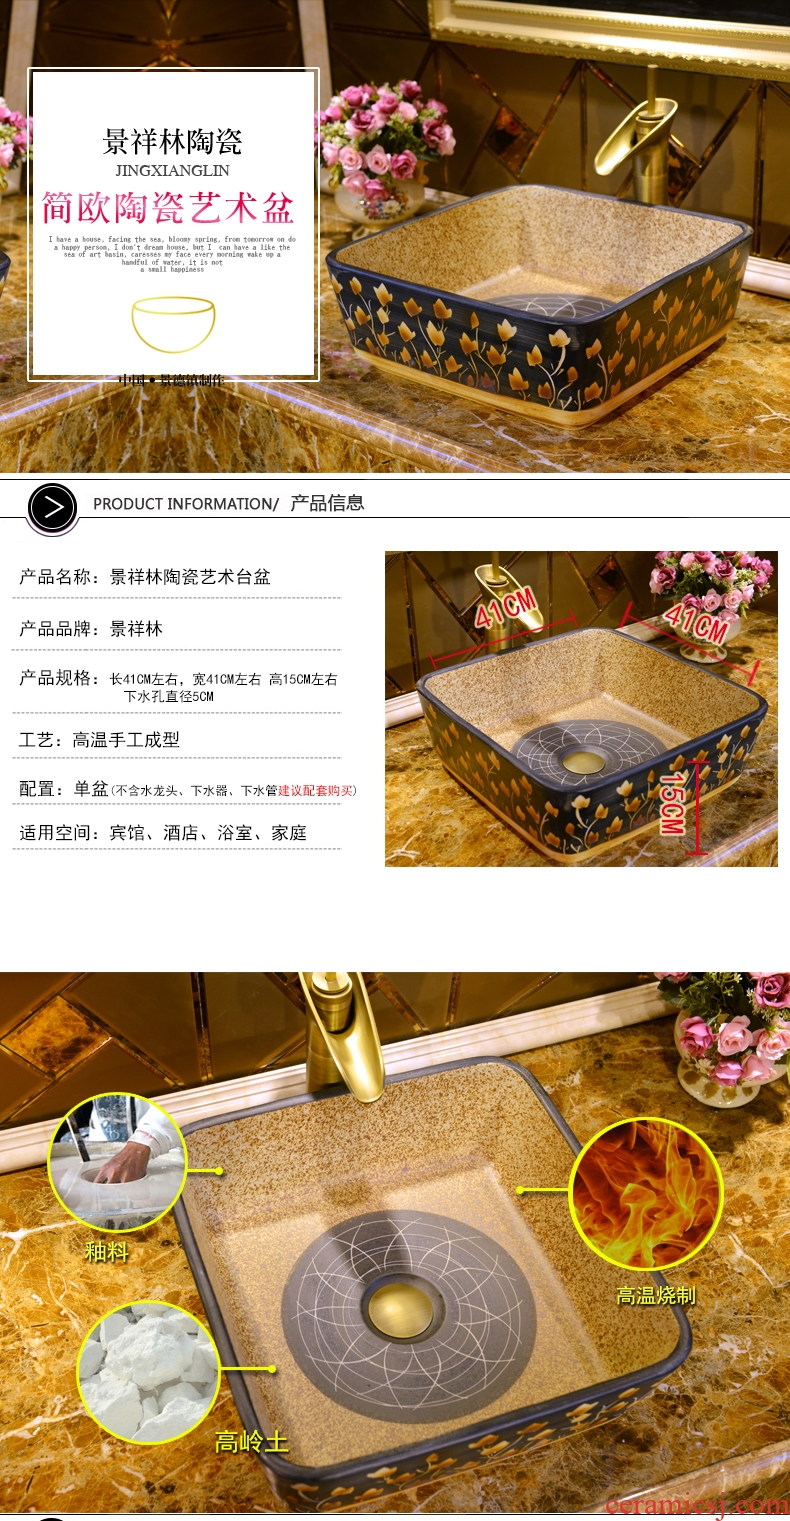 JingXiangLin European contracted jingdezhen traditional manual basin on the lavatory basin & ndash; & ndash; The garden